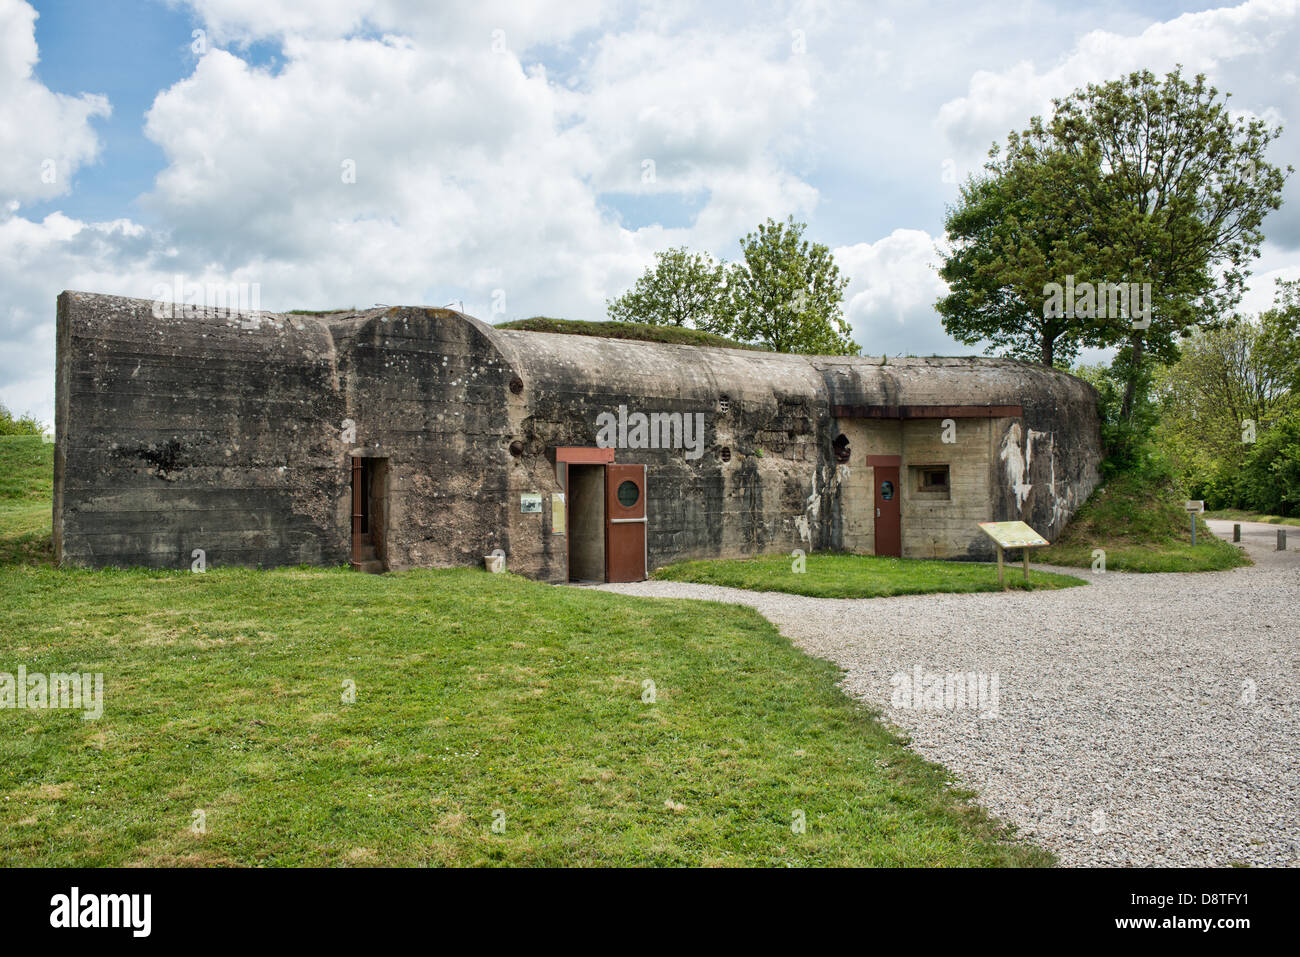 Le centre de visiteurs à la batterie d'Azeville, Normandie, France, l'une des cibles principales des alliés lors du débarquement Banque D'Images